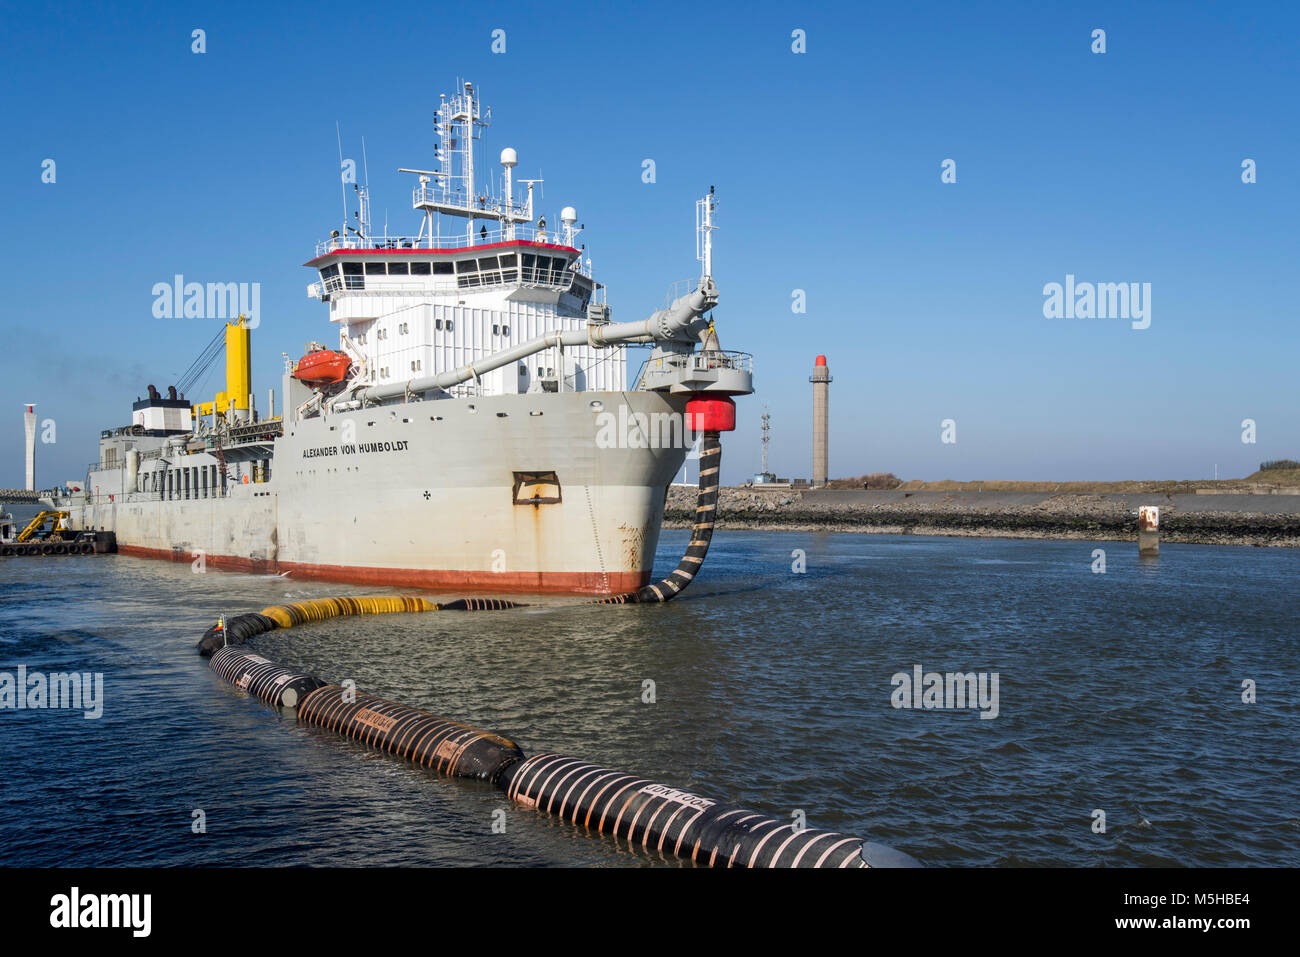 Trailing tramoggia di aspirazione draga Alexander von Humboldt nel porto di Ostenda sabbia di scarico tramite flessibili lunghi / pipeline flottante a spiagge, Belgio Foto Stock